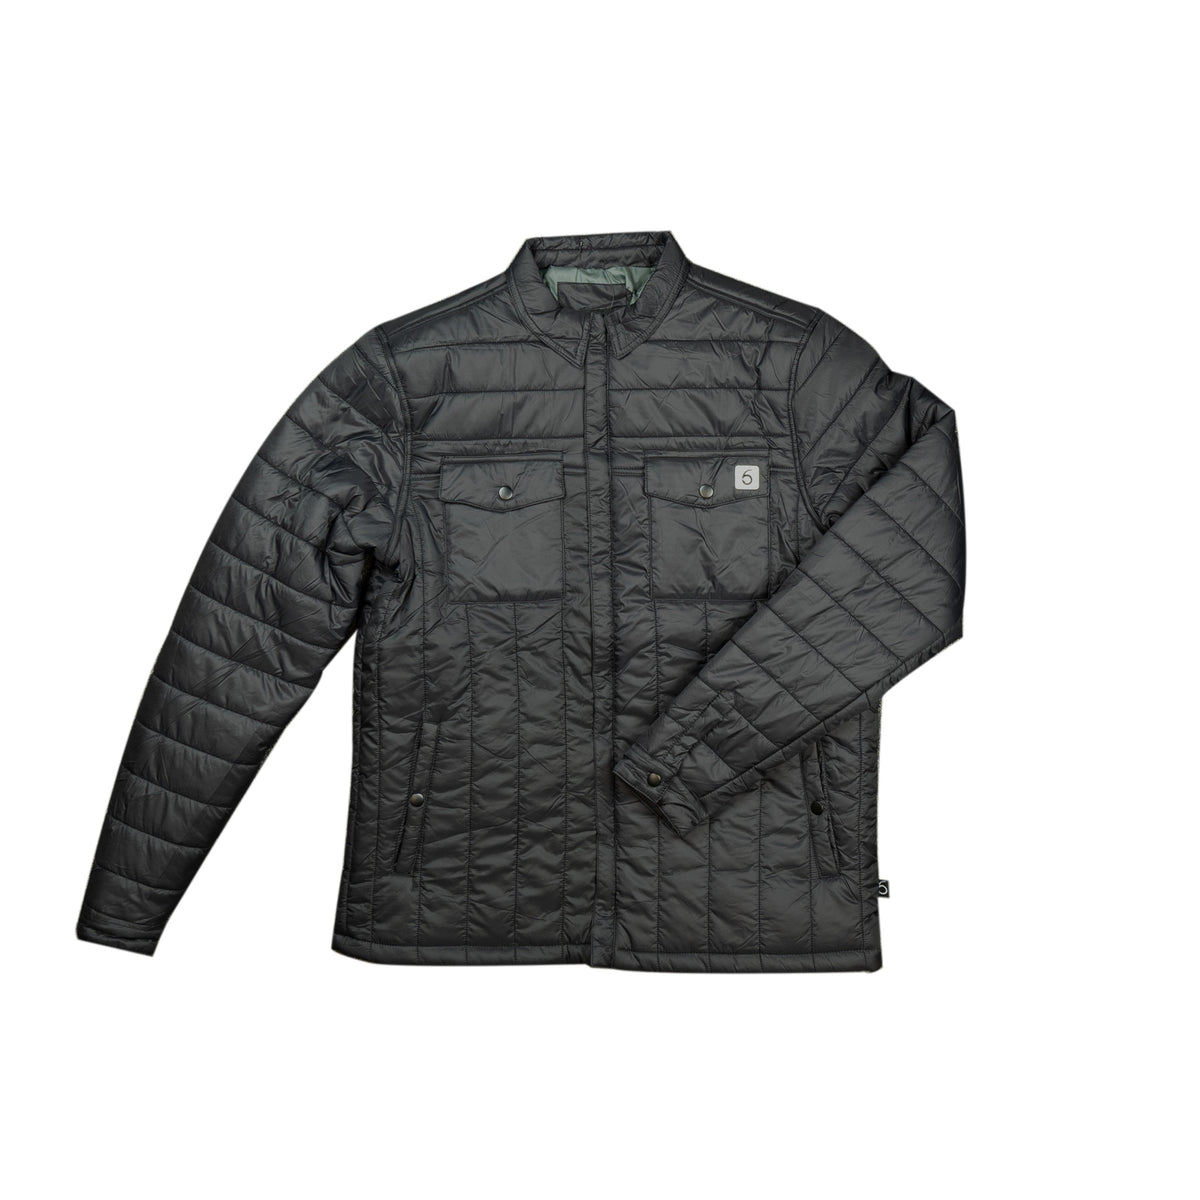 ネット 6th sense fishing gear jacket XL zip up excellent condition